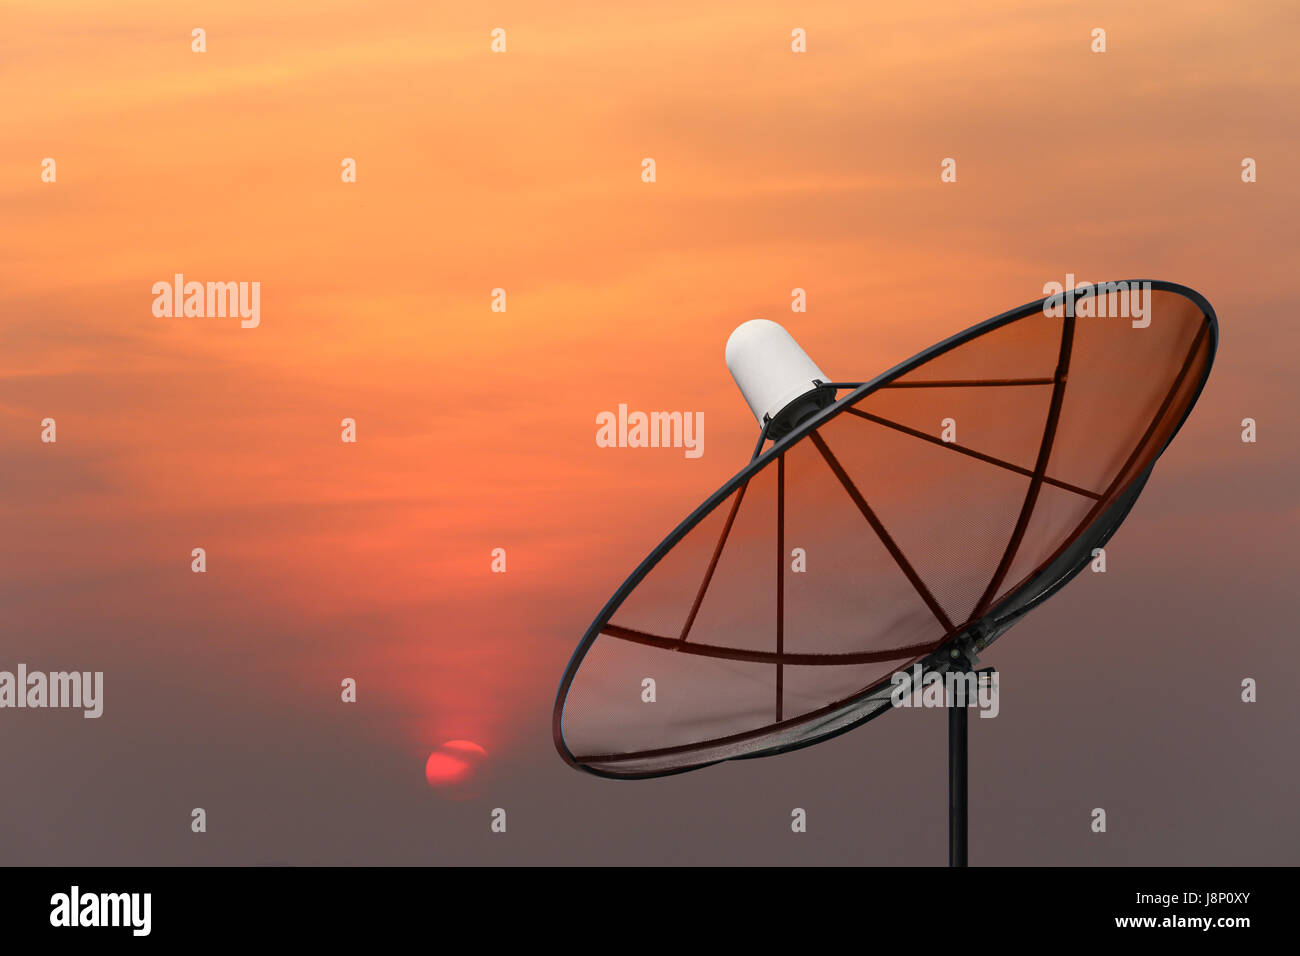 Black Satellite dish on sunset background. Stock Photo